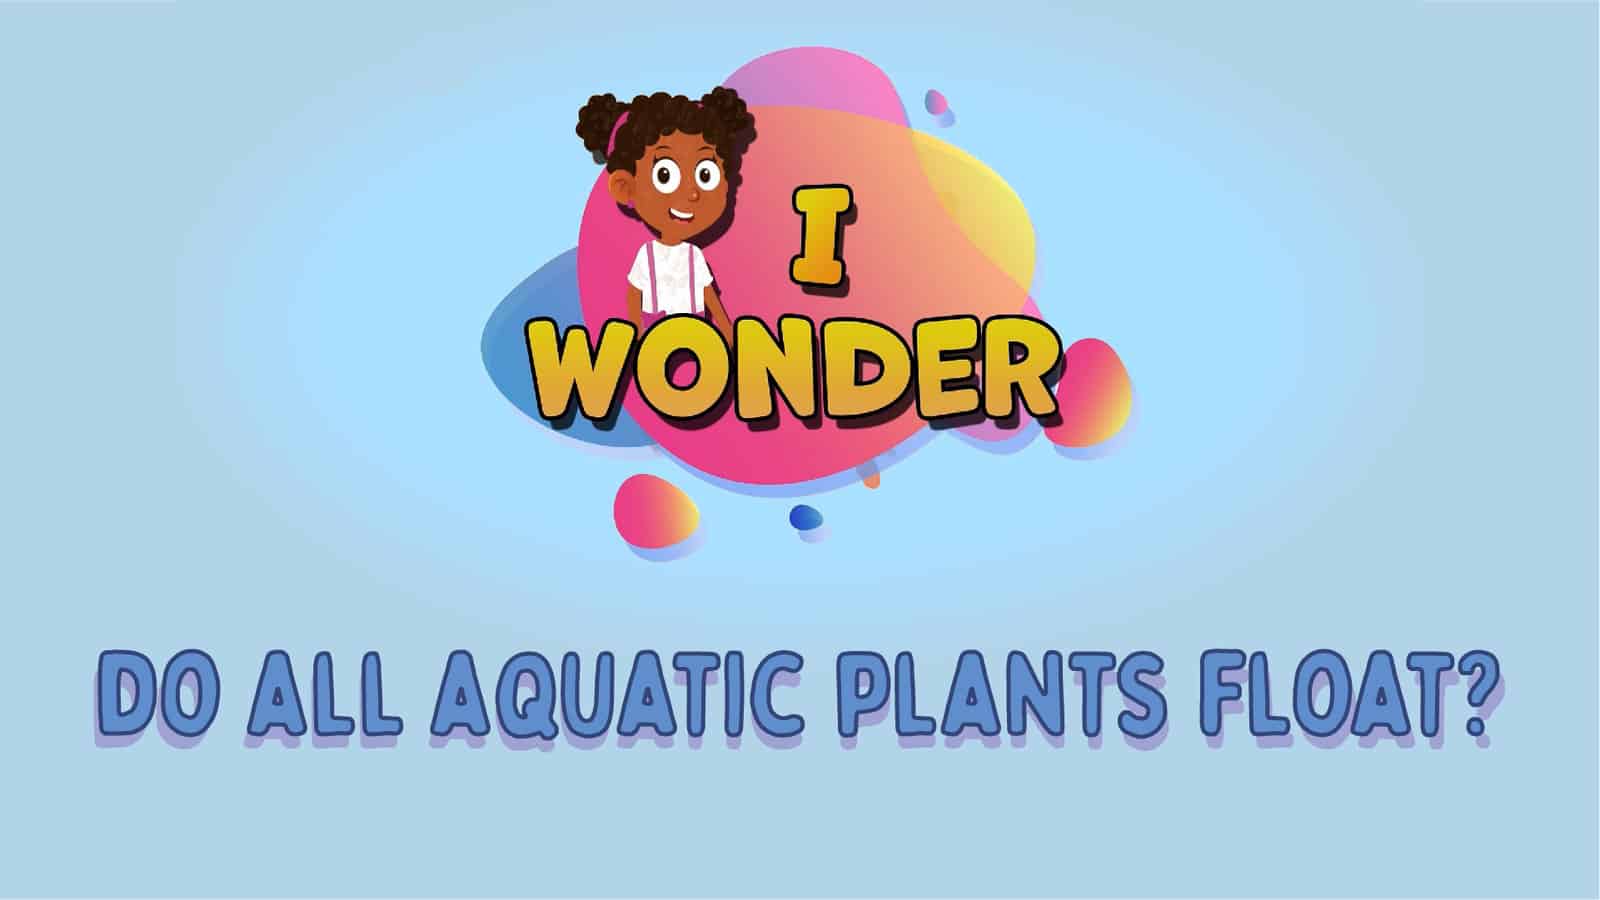 Do All Aquatic Plants Float?